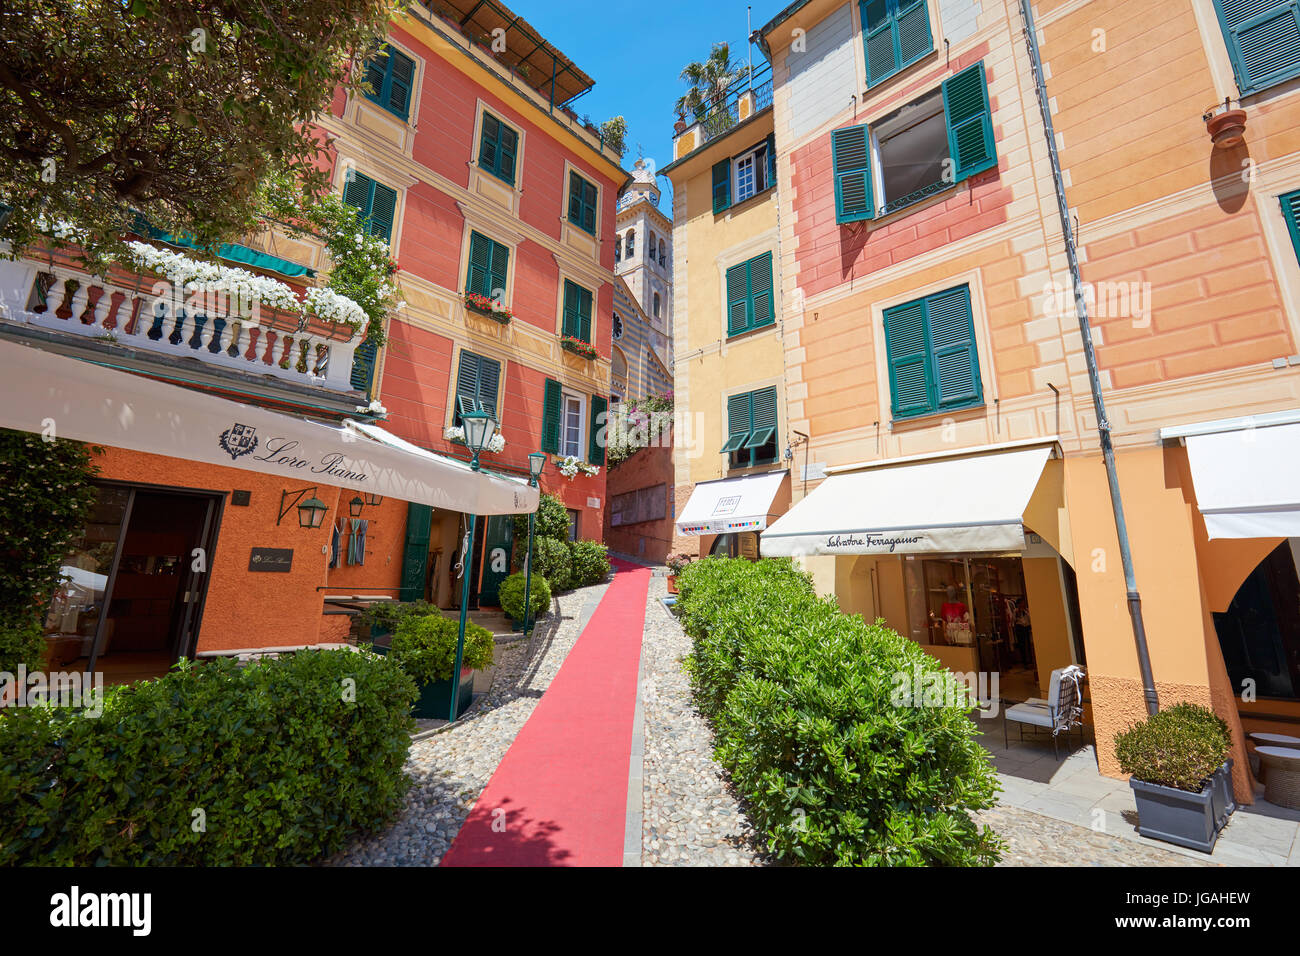 Portofino villaggio italiano con case colorate facciate e negozi di lusso come Loro Piana e Salvatore Ferragamo Foto Stock